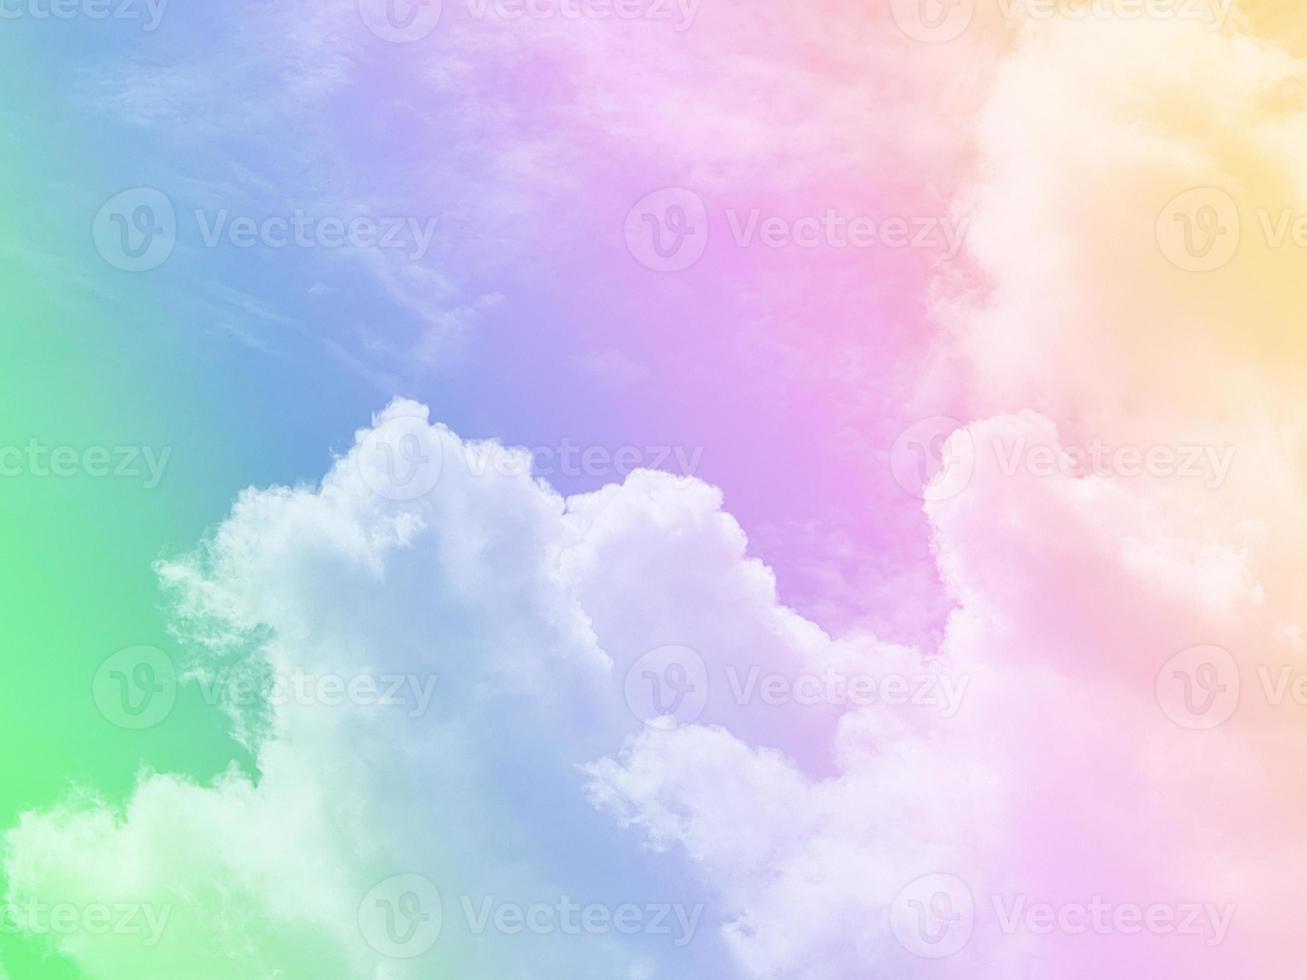 schönheit süß pastellgrün gelb bunt mit flauschigen wolken am himmel. mehrfarbiges Regenbogenbild. abstrakte Fantasie wachsendes Licht foto